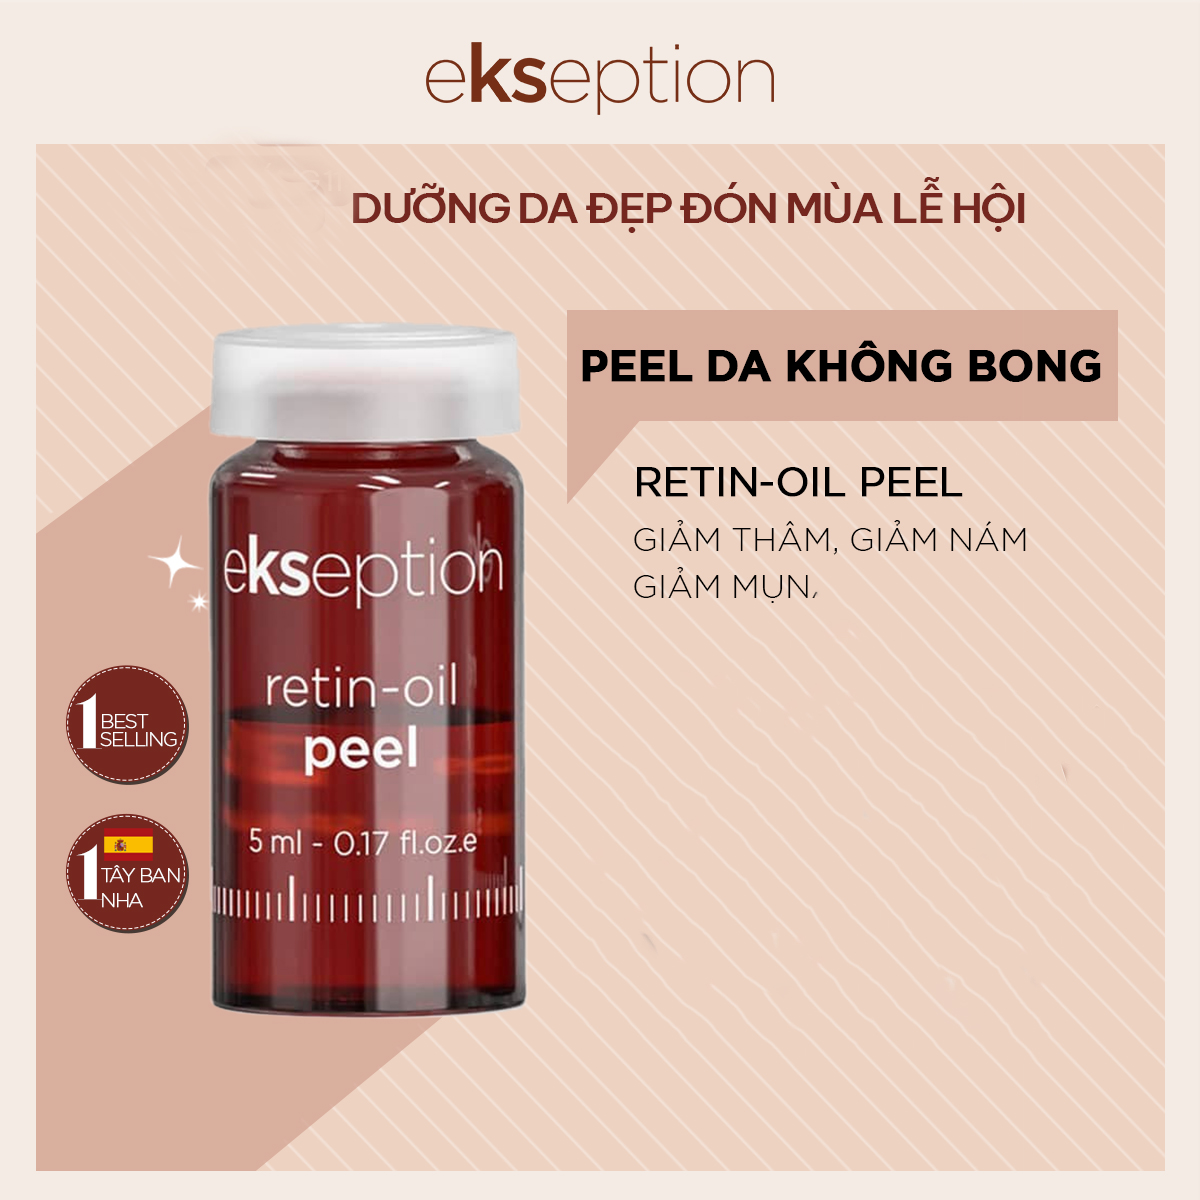 Ekseption Retin-iol Peel – Peel giảm nhăn, chống lão hóa